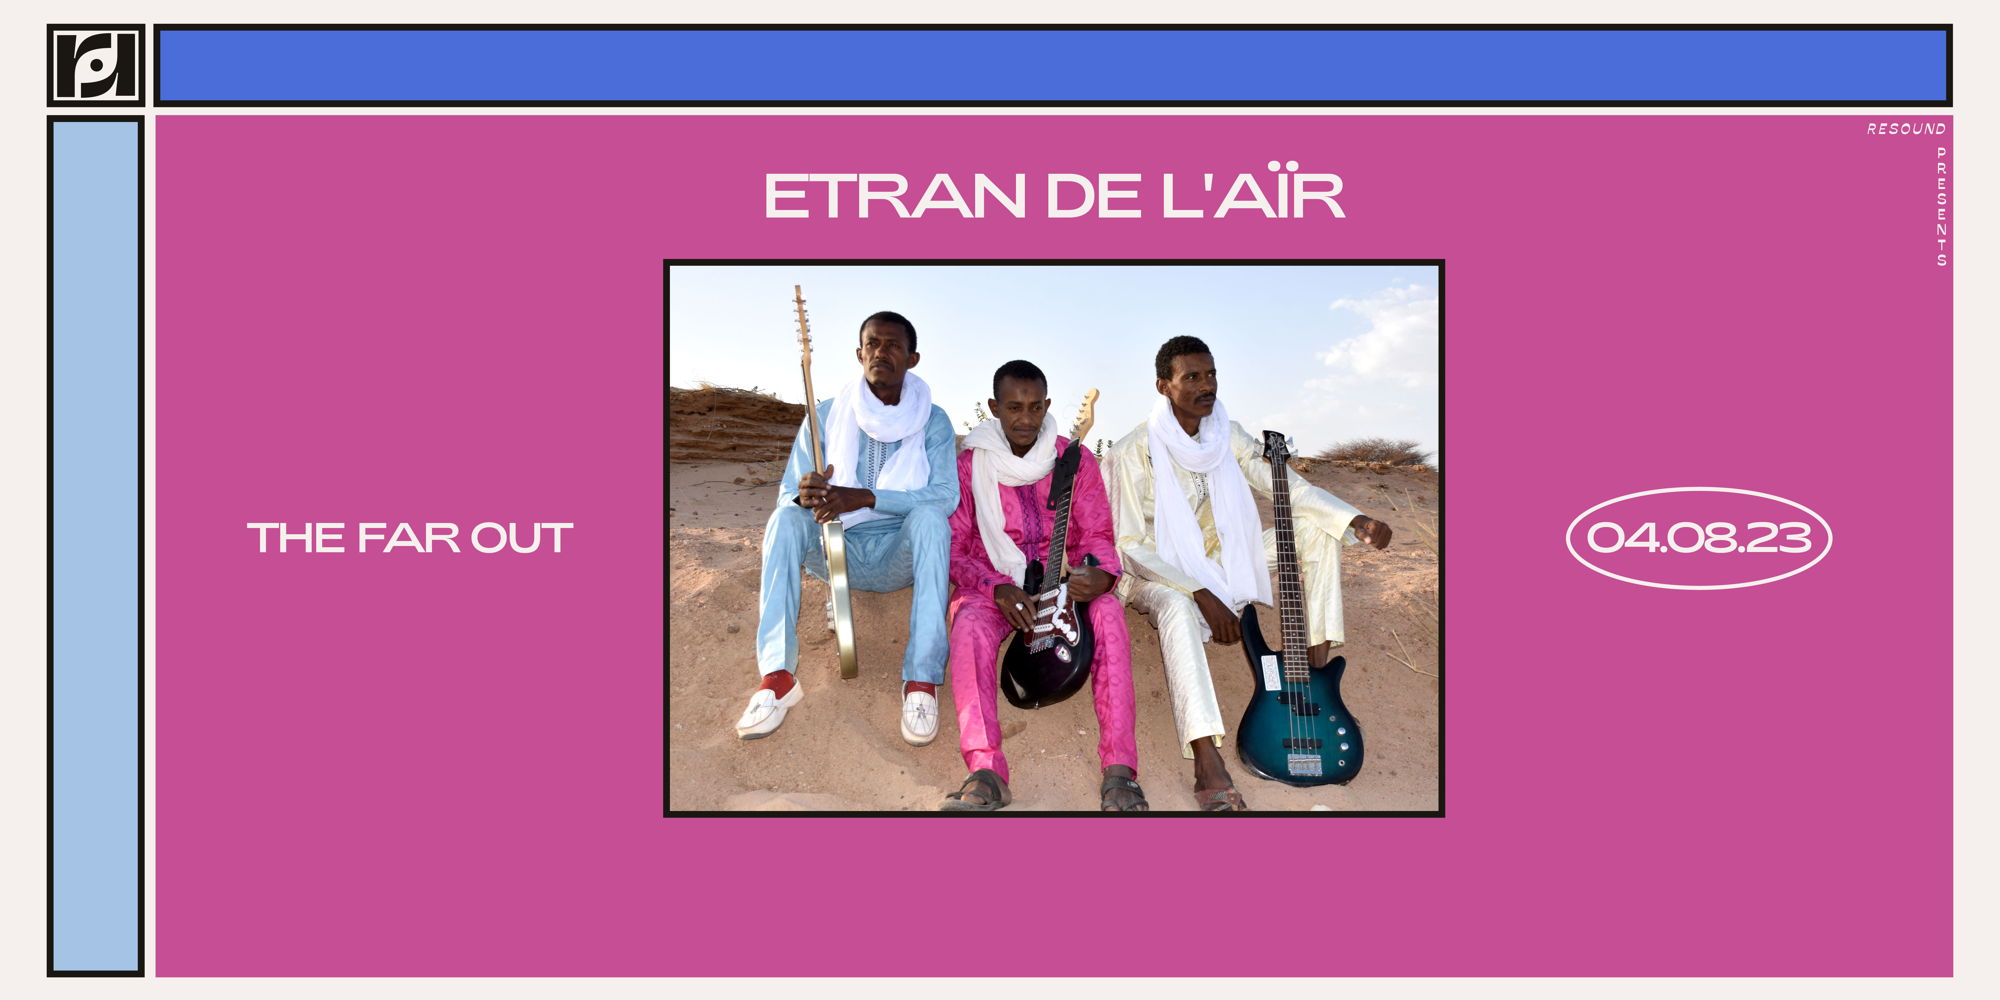  Etran de L'AÏr at The Far Out 4/08 promotional image